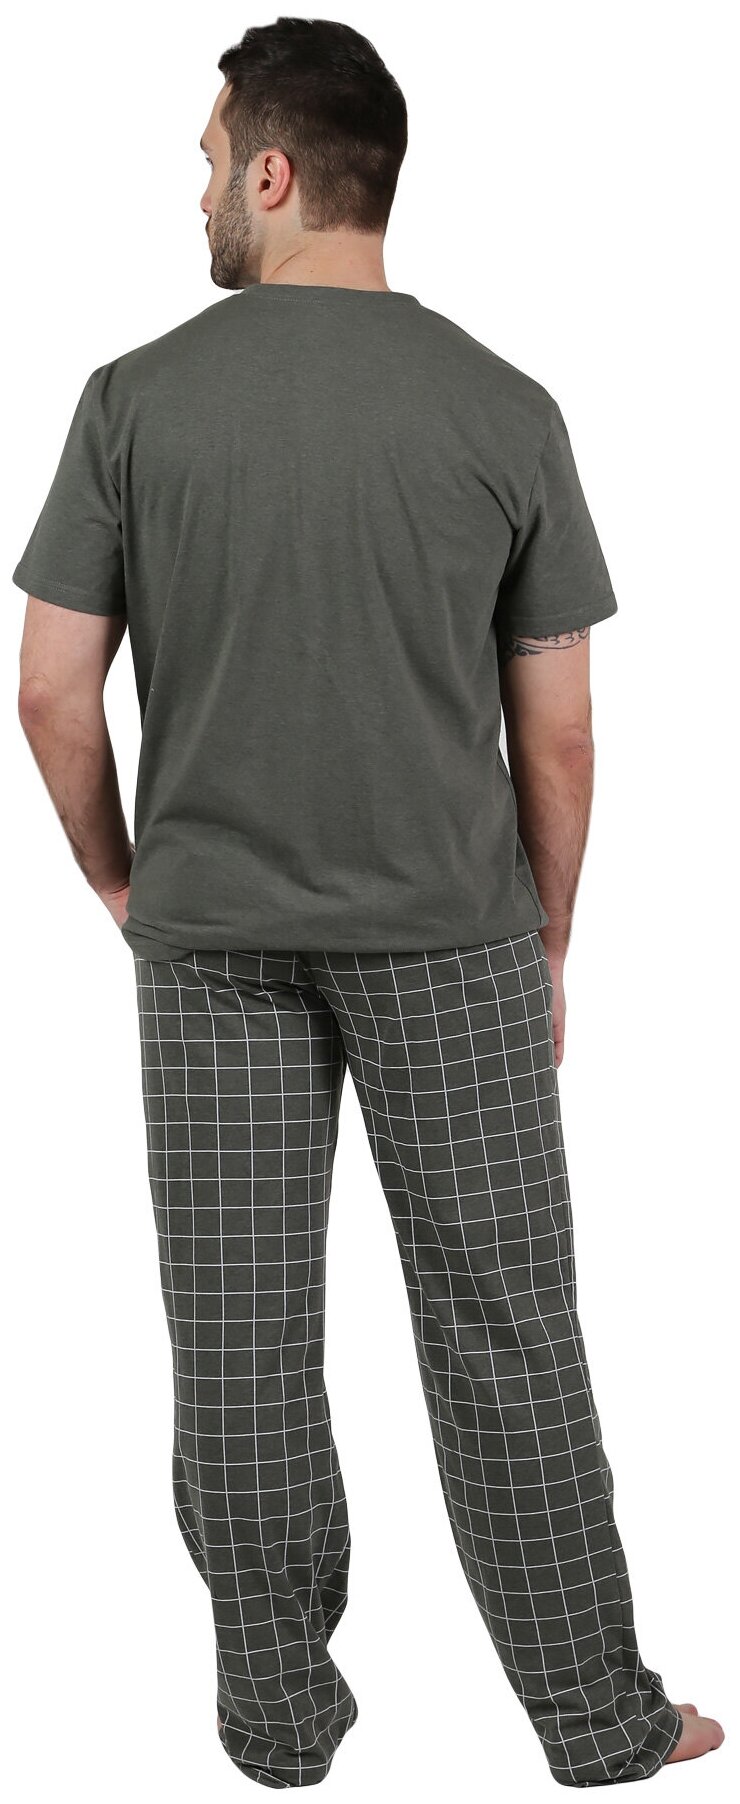 Мужская пижама Космос Хаки размер 52 Кулирка Оптима трикотаж футболка с коротким рукавом округлым вырезом брюки прямые с карманами и поясом на резинке - фотография № 2